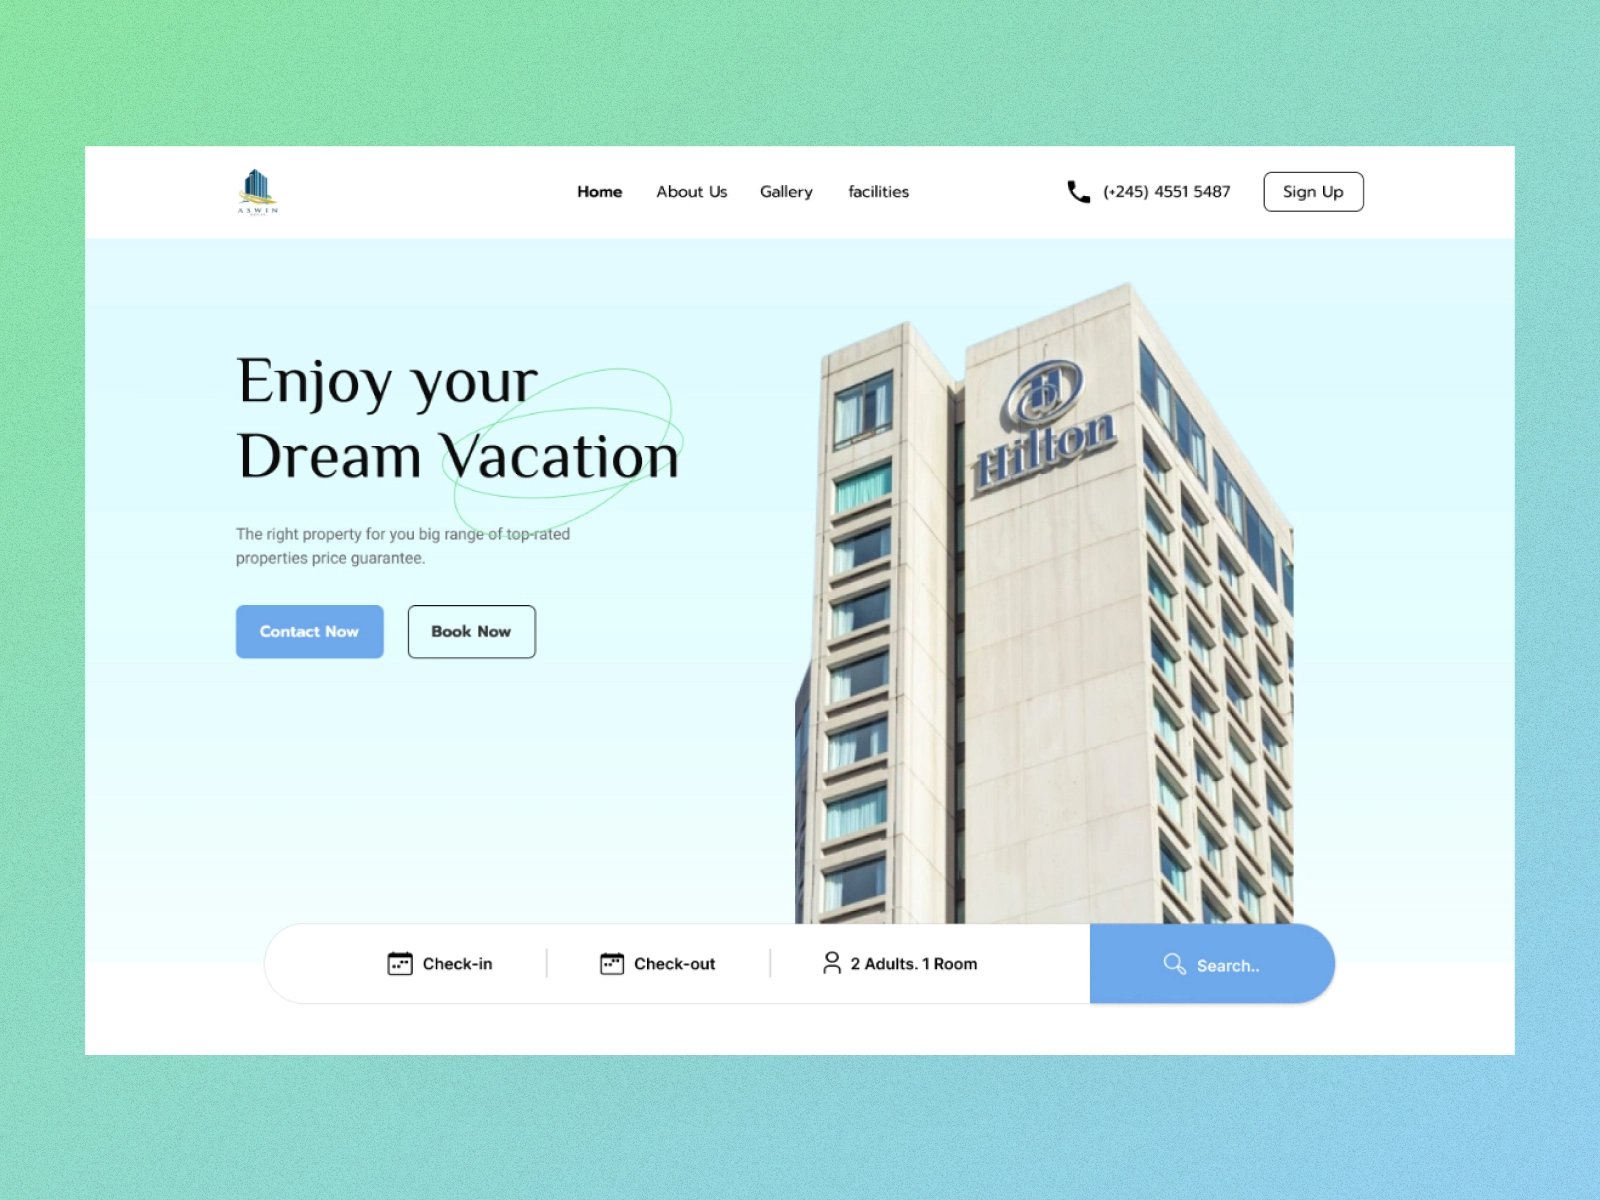 出行必选！12组酒店品牌WEB界面设计灵感